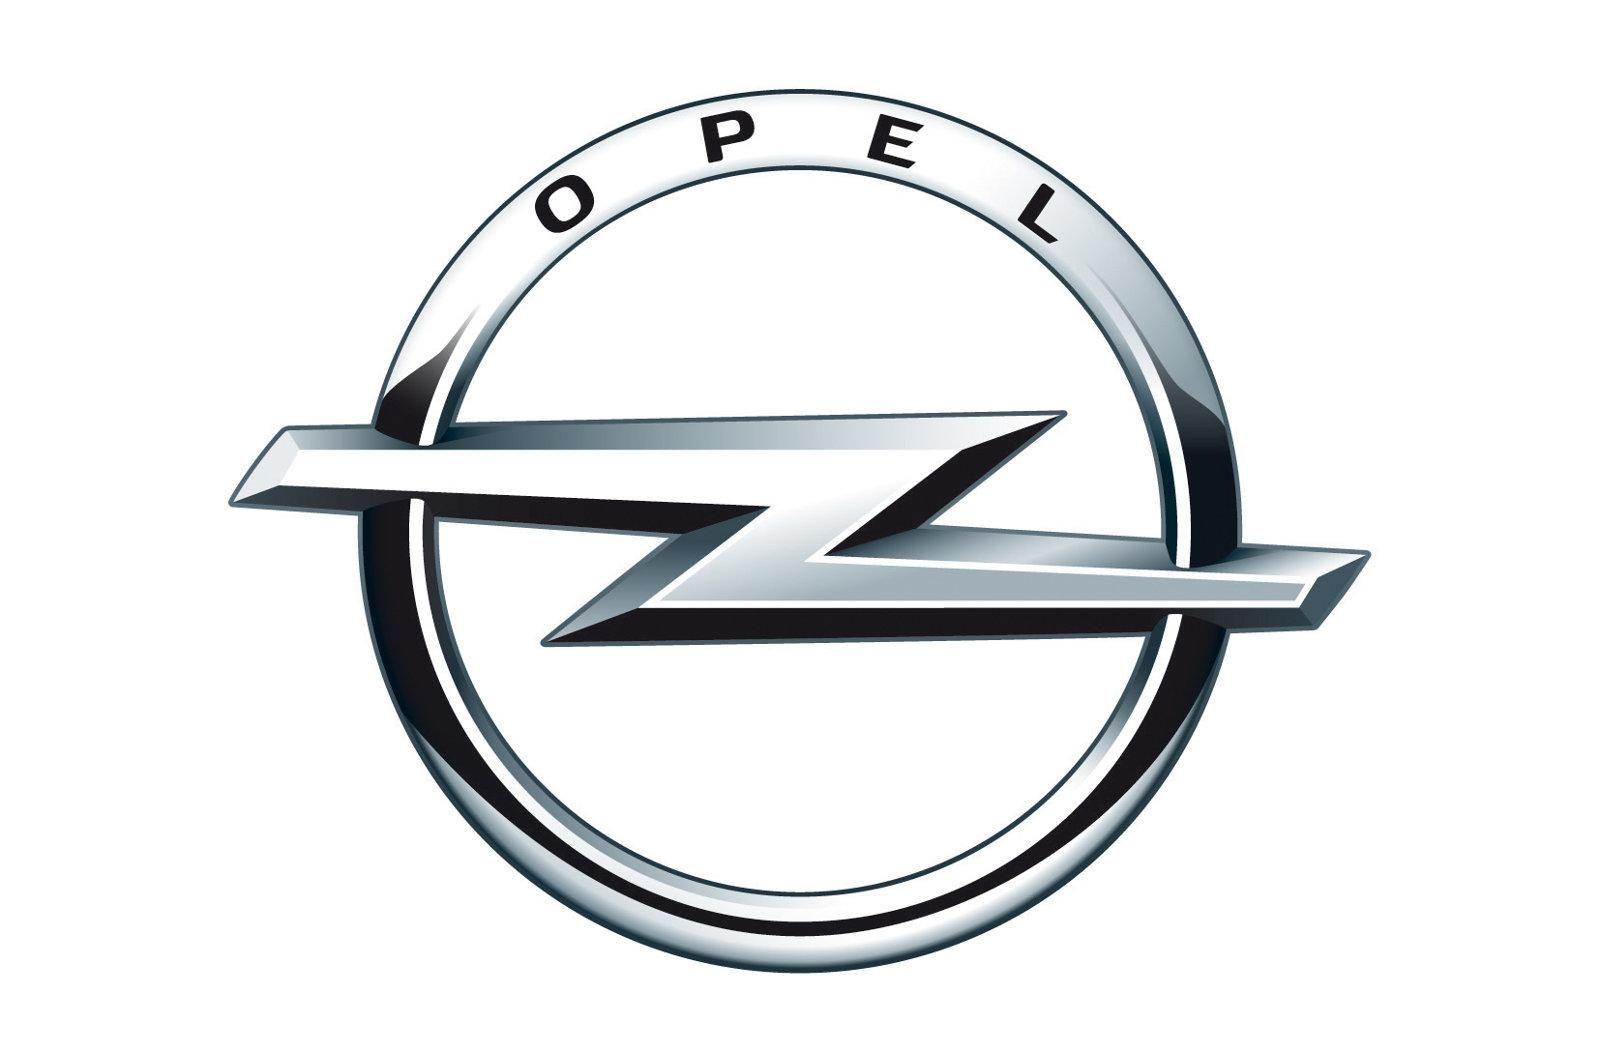 Lighting Bolt Car Logo - Opel Logo, Opel Car Symbol and History | Car Brand Names.com